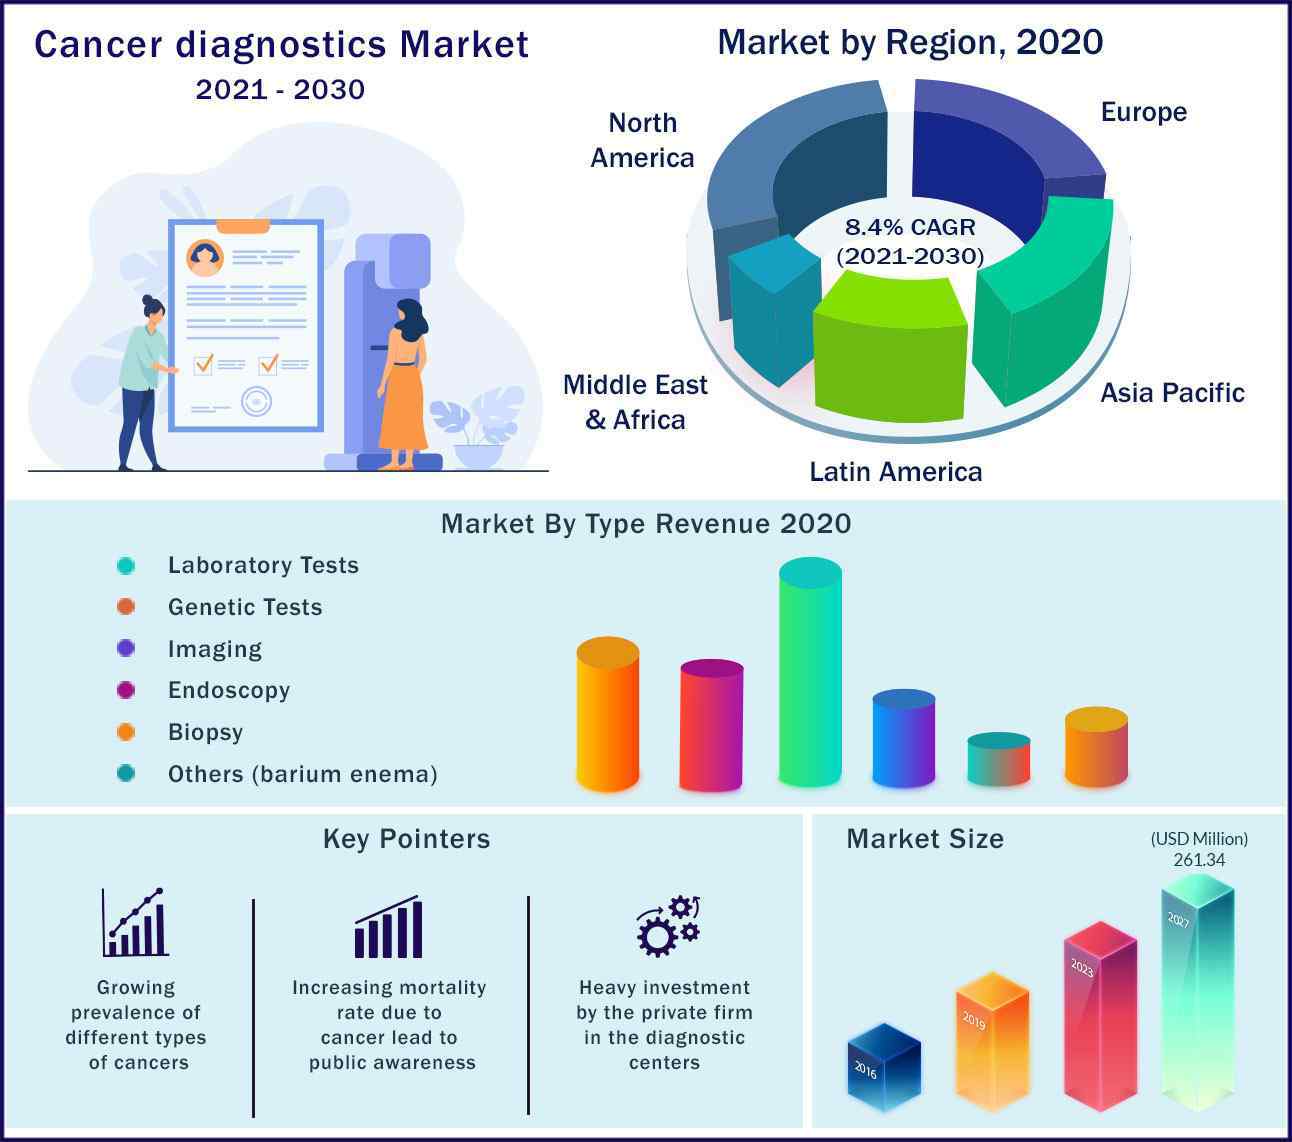 Global Cancer Diagnostics Market 2021 to 2030